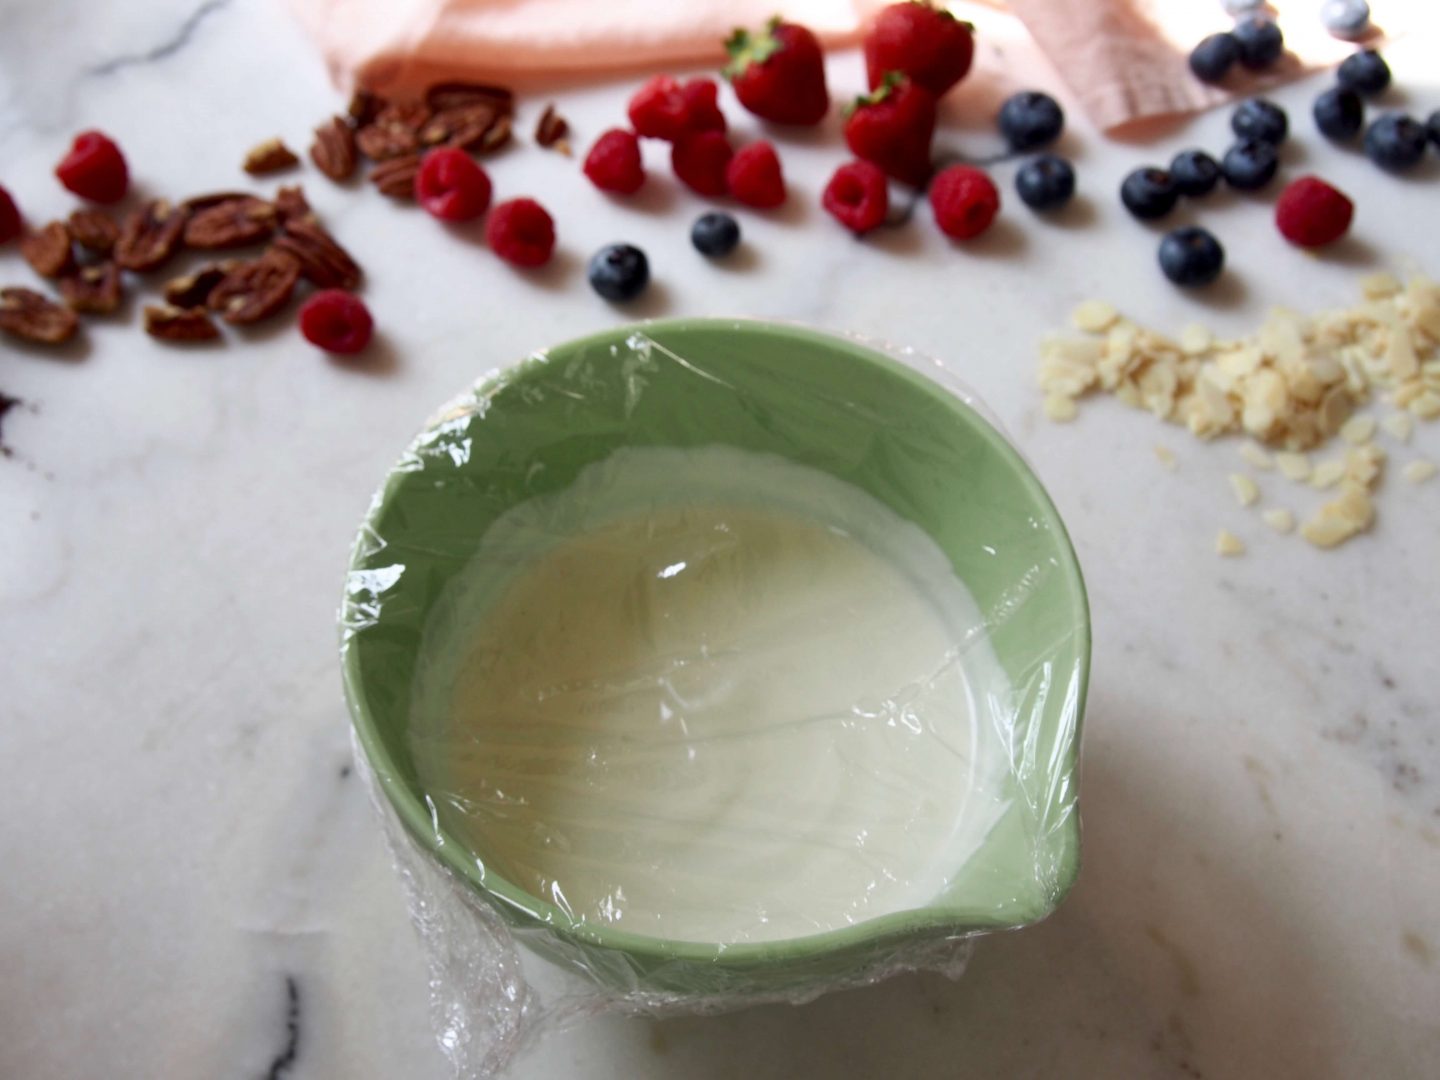 La glace au yaourt maison *frozen yogurt* sans sorbetière recette hyper facile L'atelier d'al blog mode lifestyle DIY